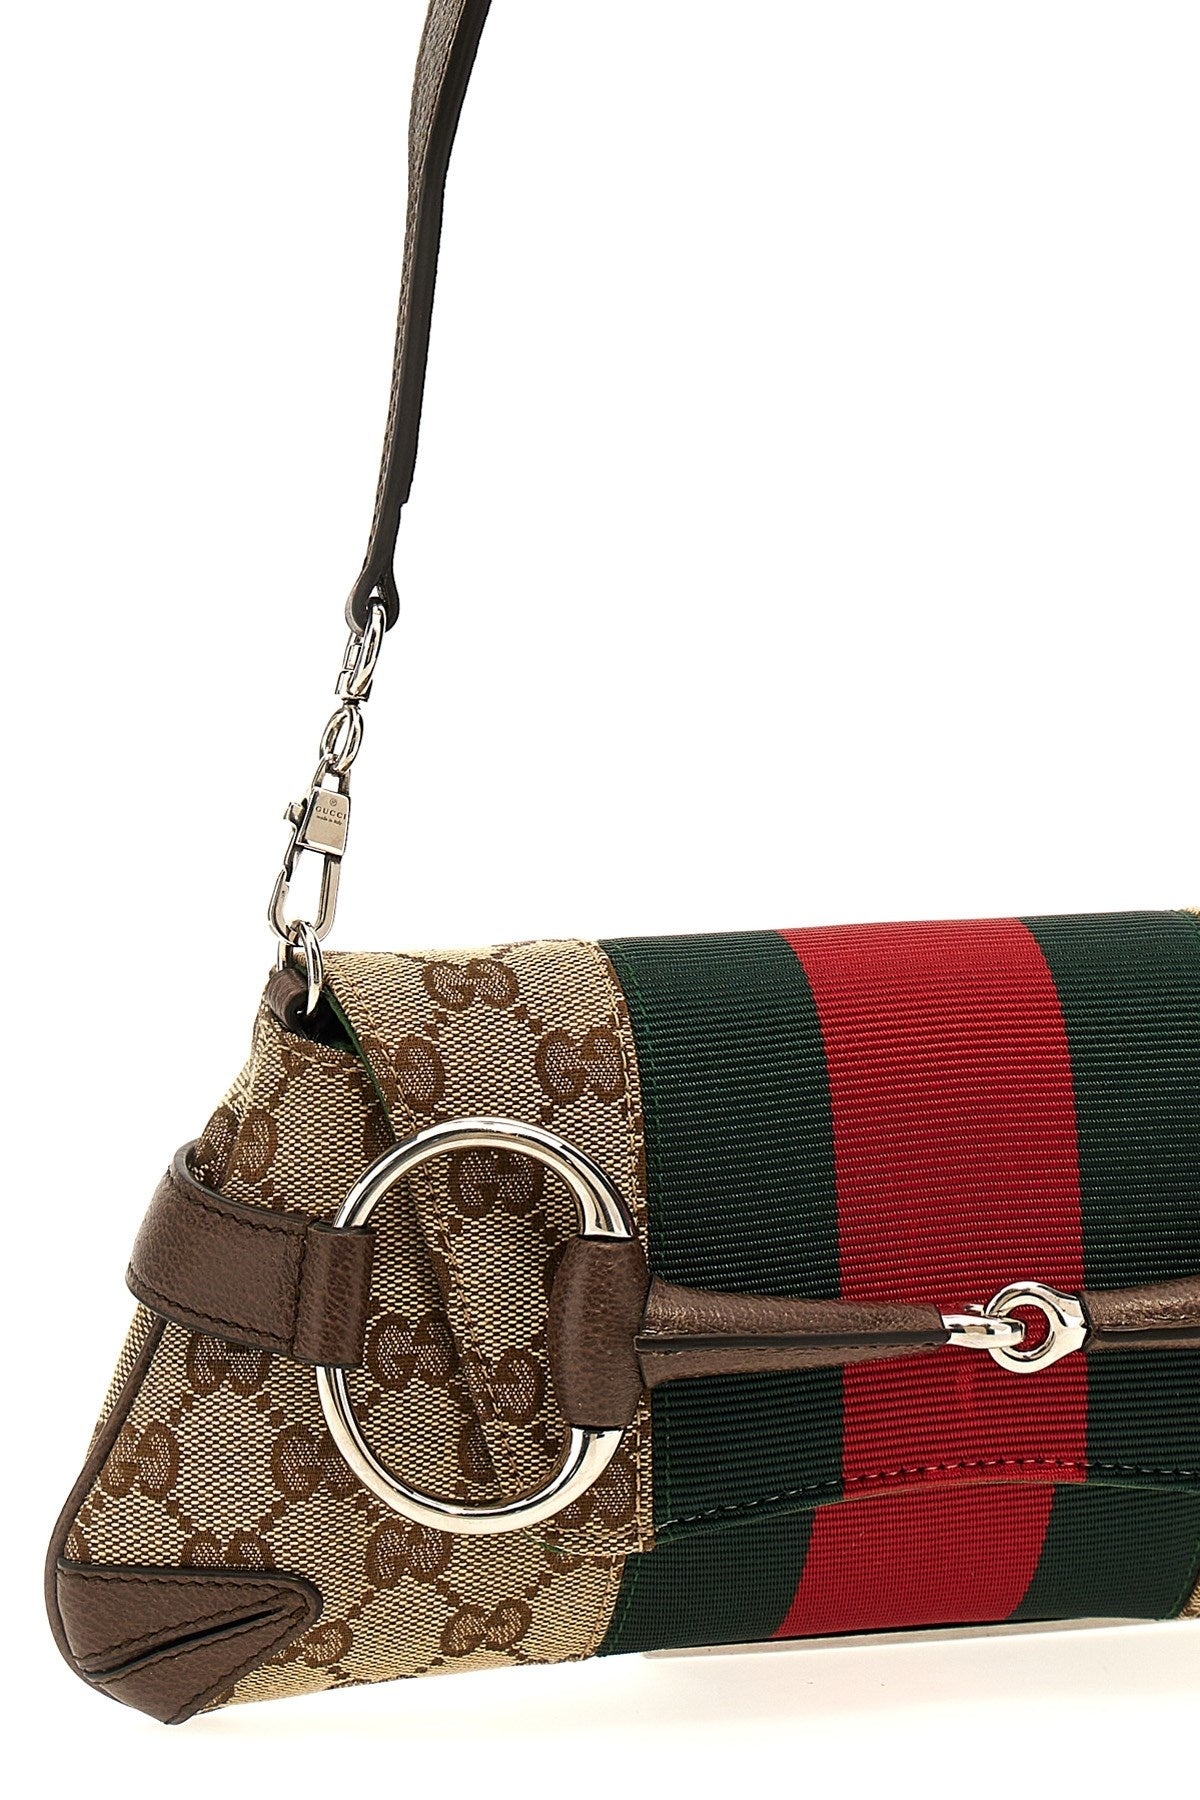 Gucci Women 'Horsebit Chain' Small Shoulder Bag - 4